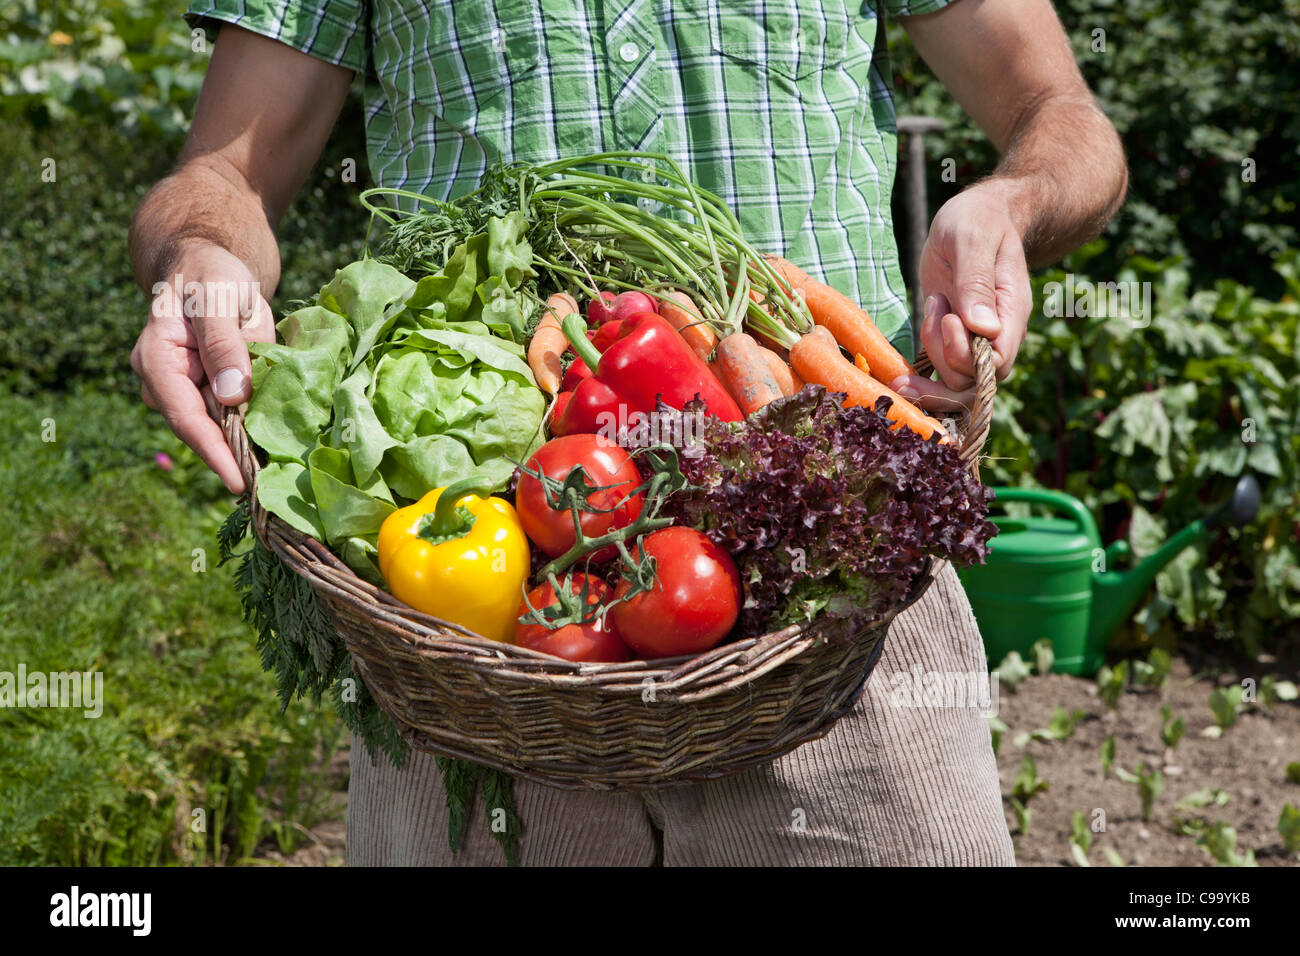 Deutschland, Bayern, Altenthann, Mann mit Korb voll mit Gemüse Stockfoto